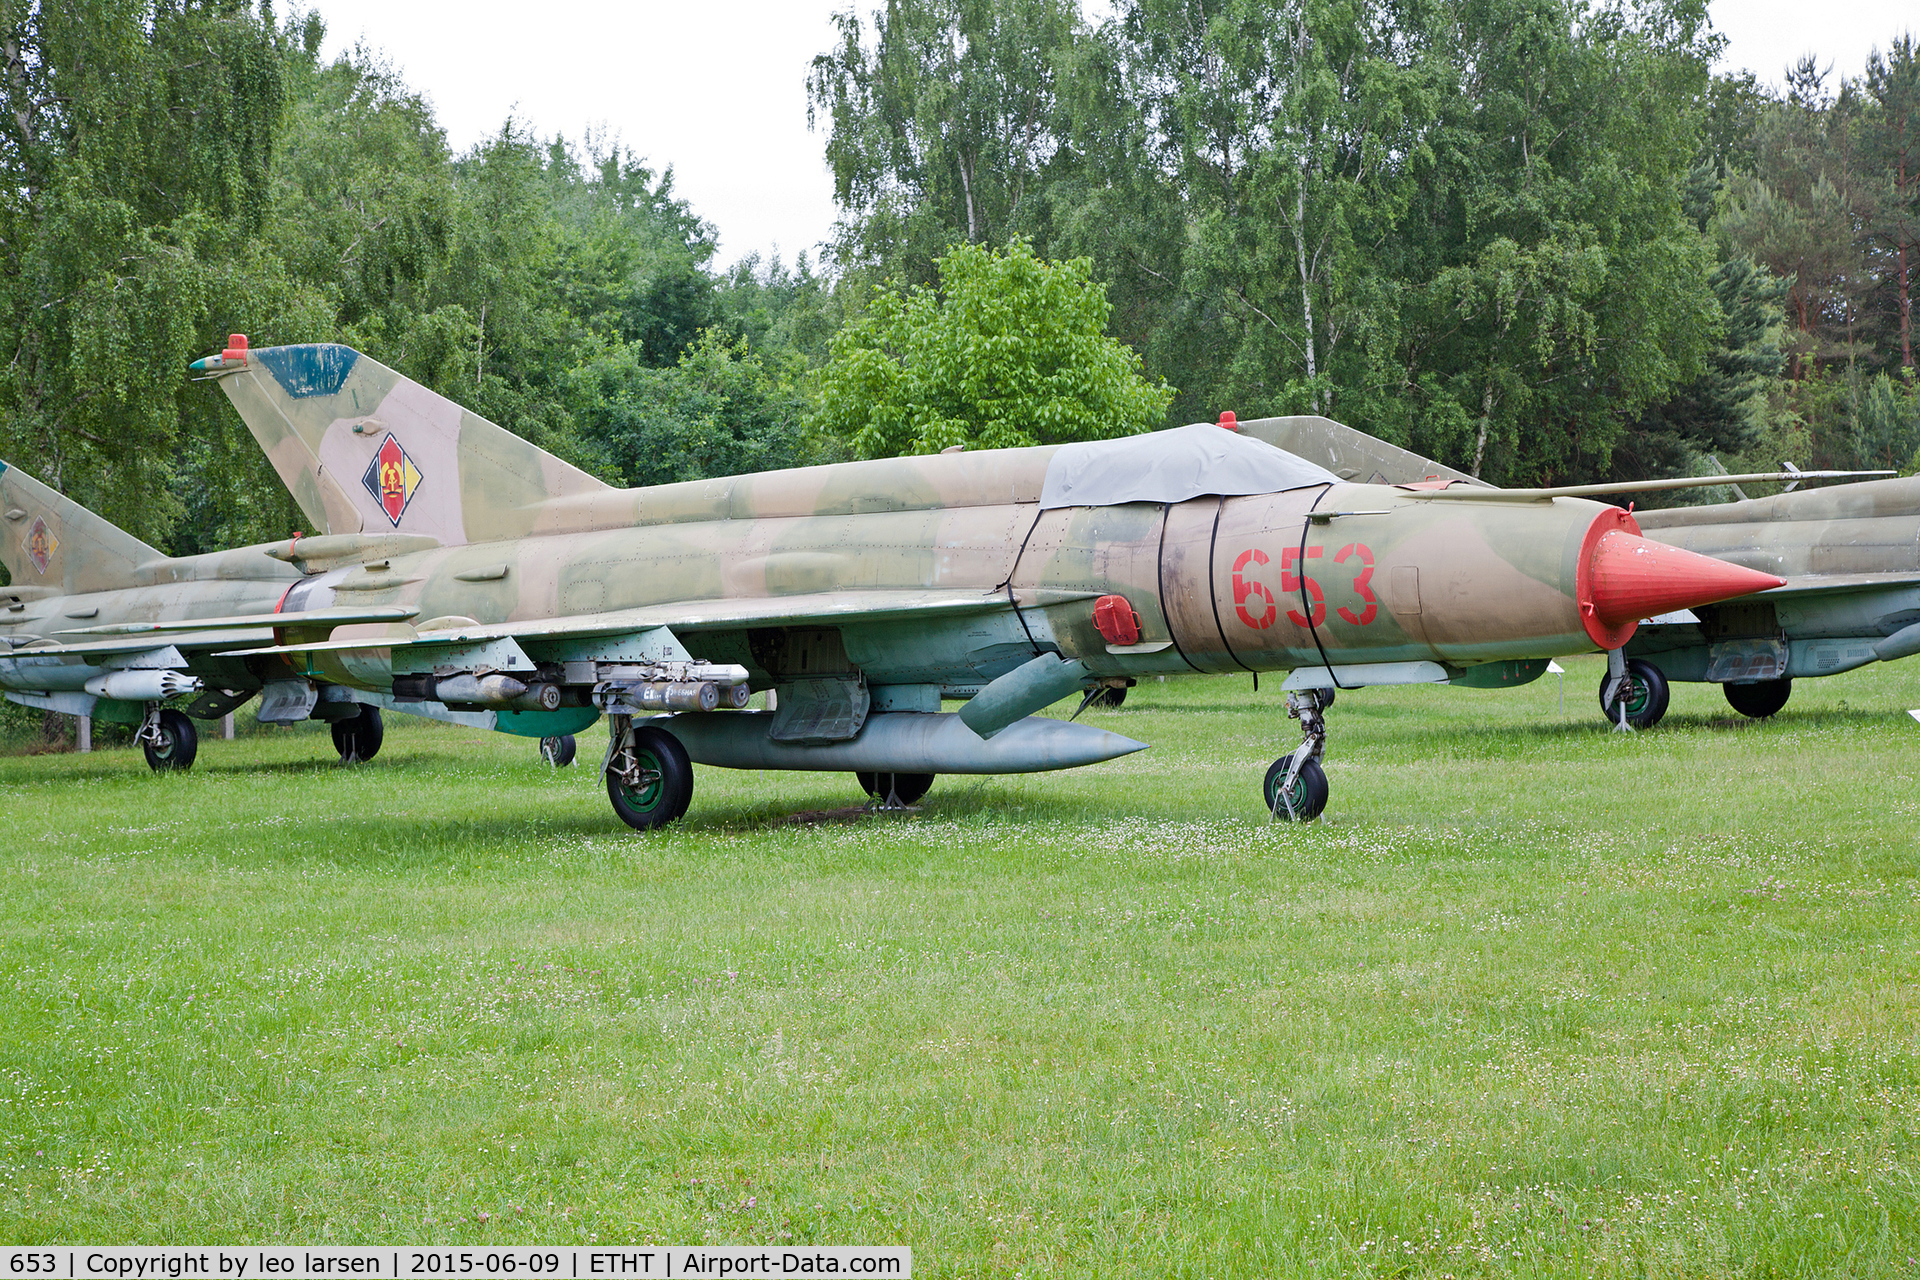 653, 1972 Mikoyan-Gurevich MiG-21MF C/N 5311, Flugplatzmuseum Cottbus 9.6.15